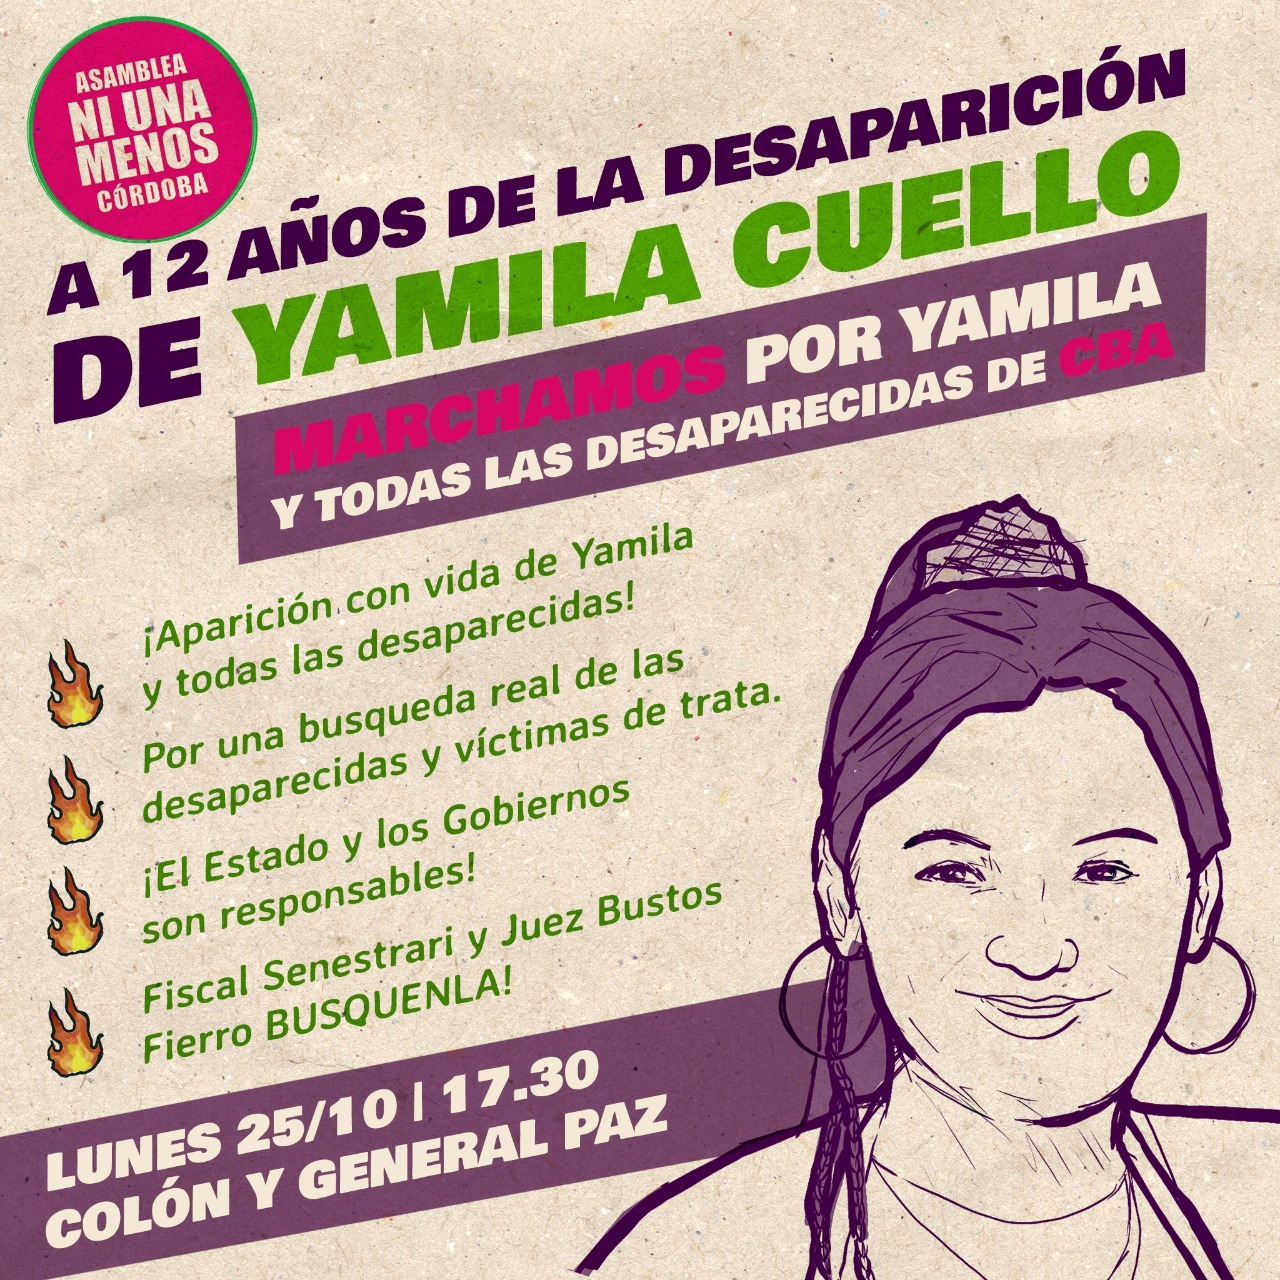 Marchan a 12 años de la desaparición de Yamila Cuello • Canal C